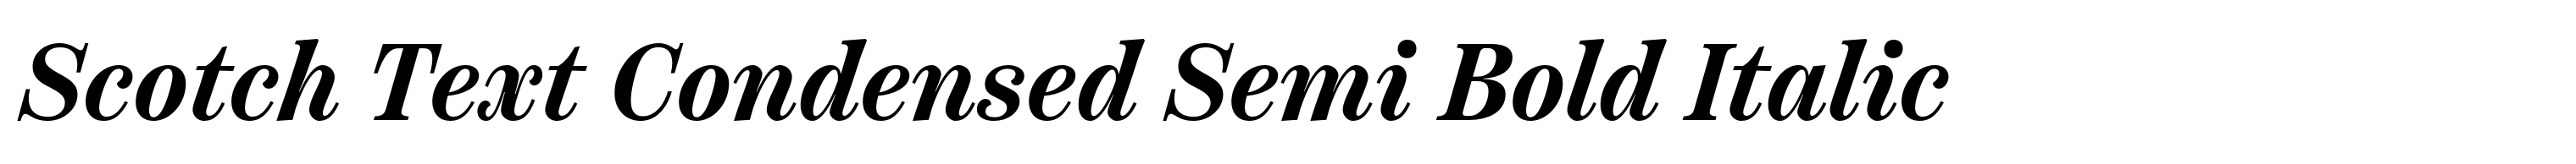 Scotch Text Condensed Semi Bold Italic